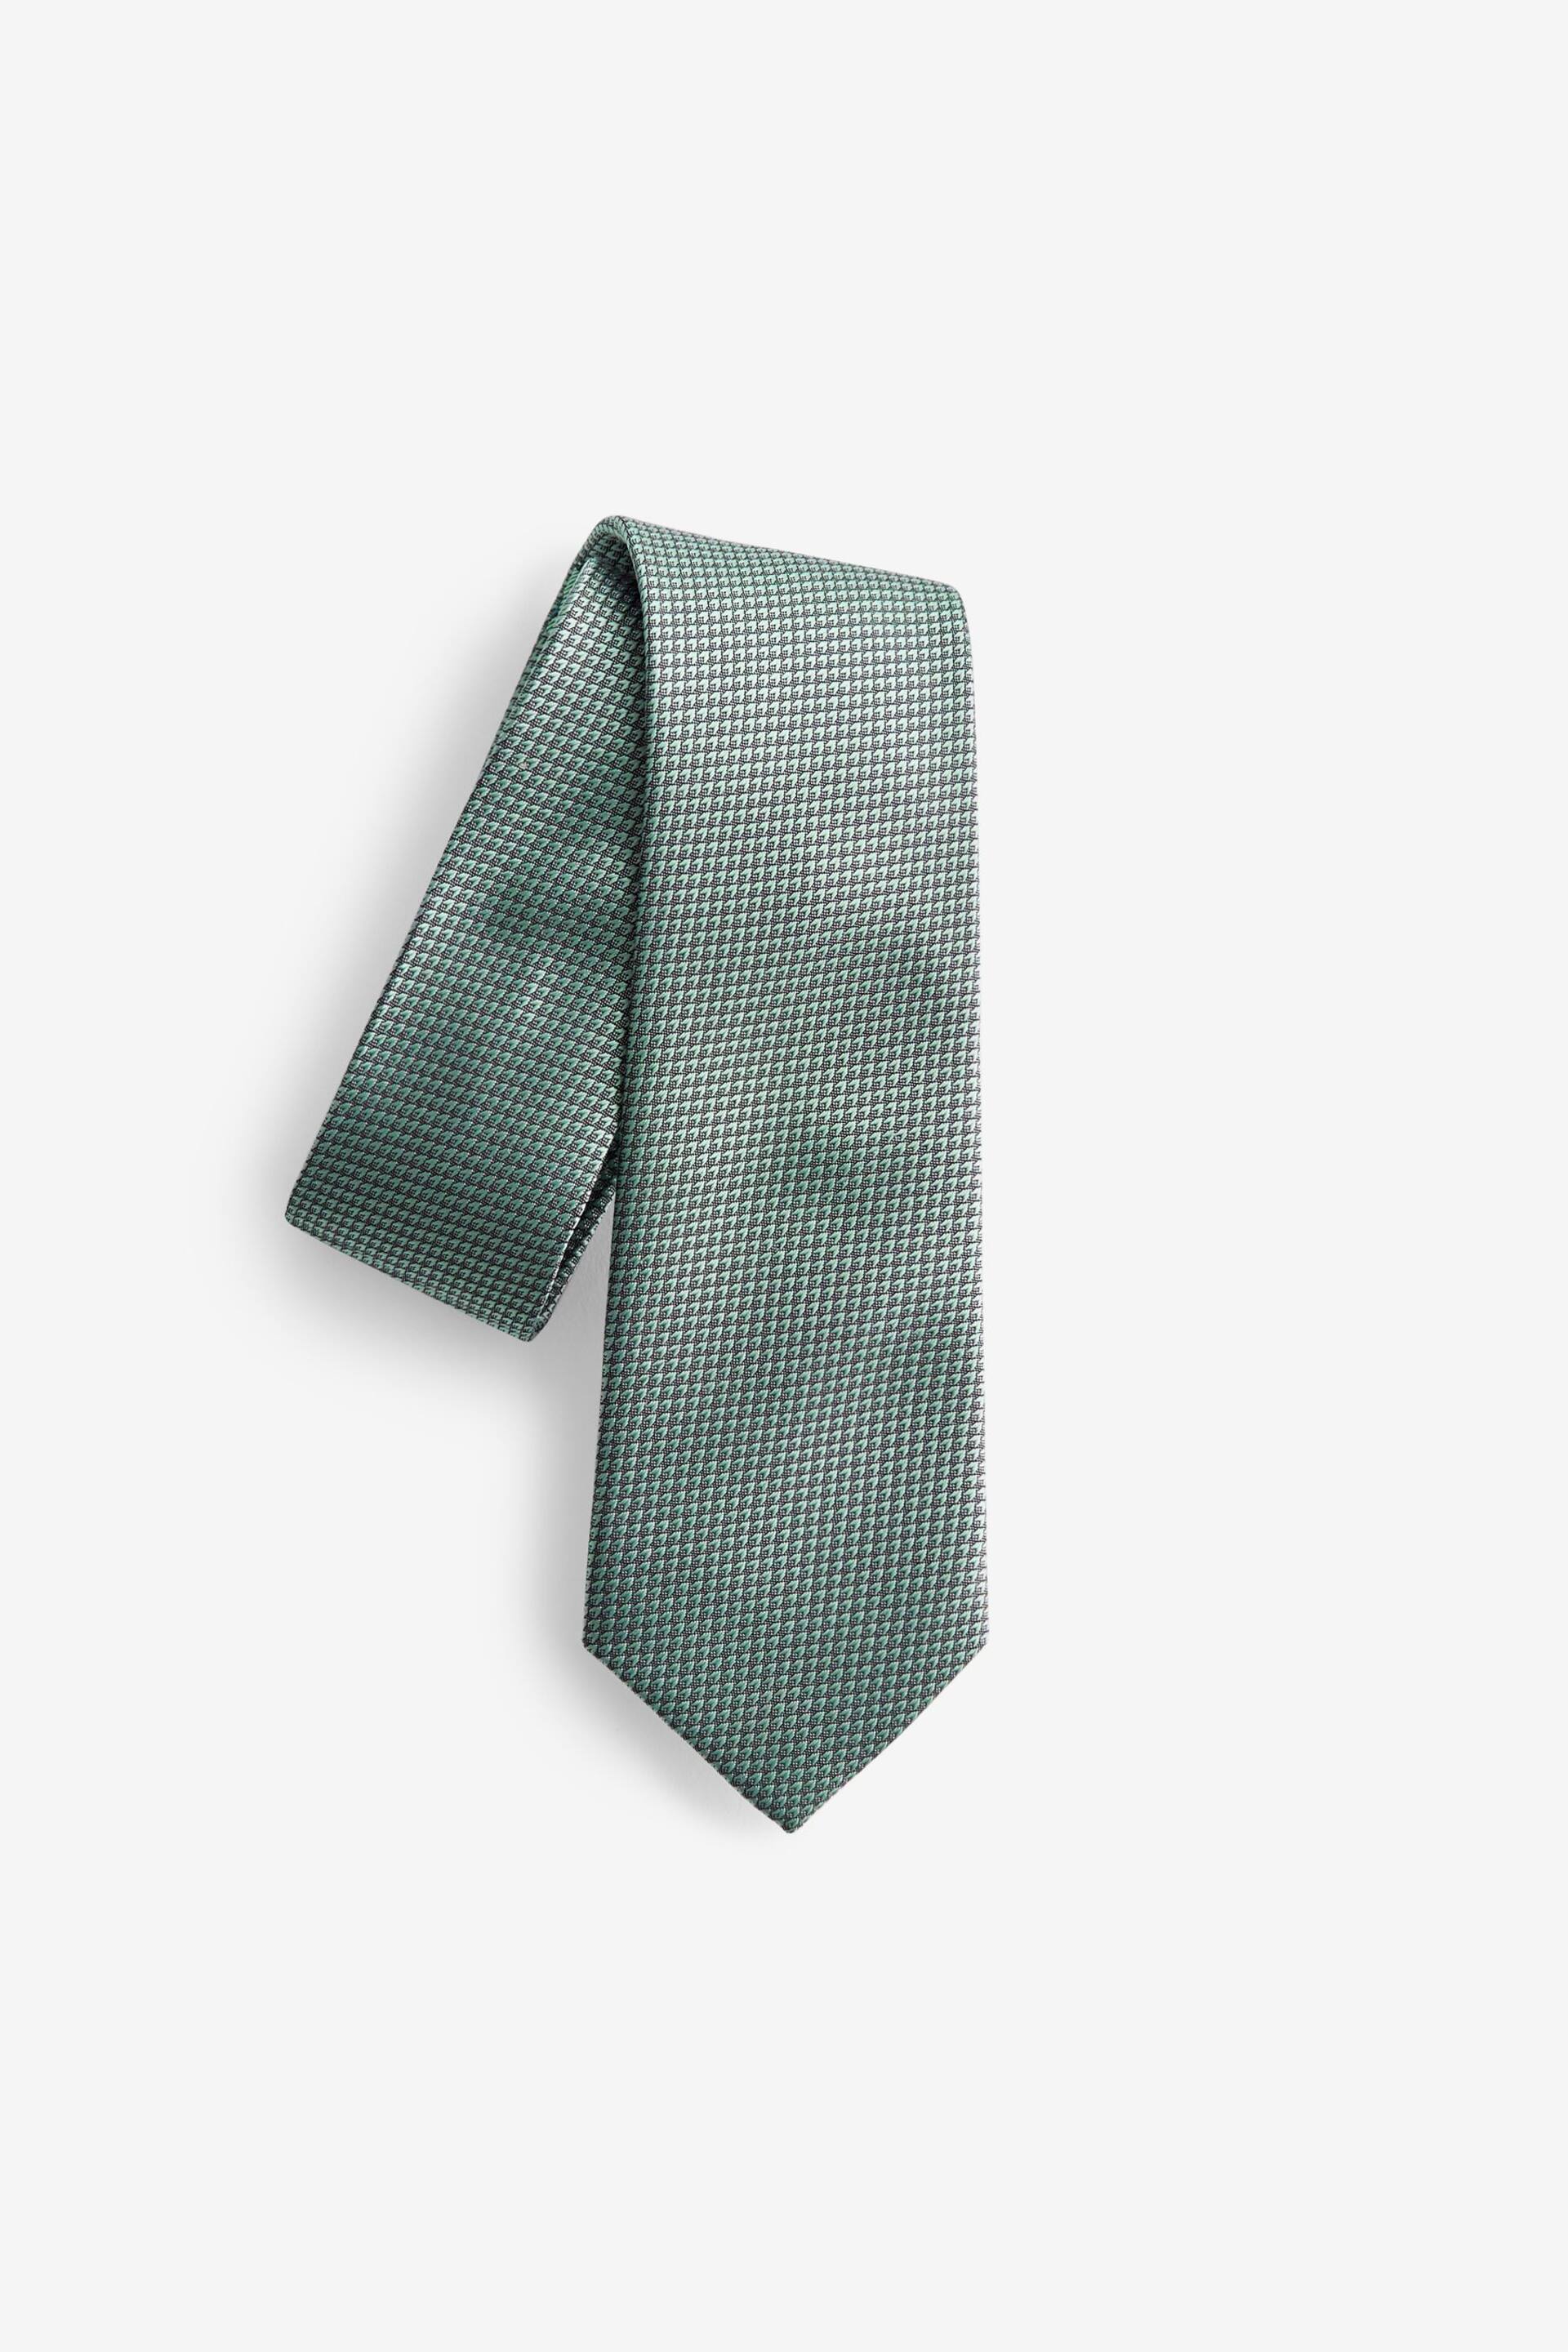 Sage Green Slim Textured Silk Tie - Image 2 of 4